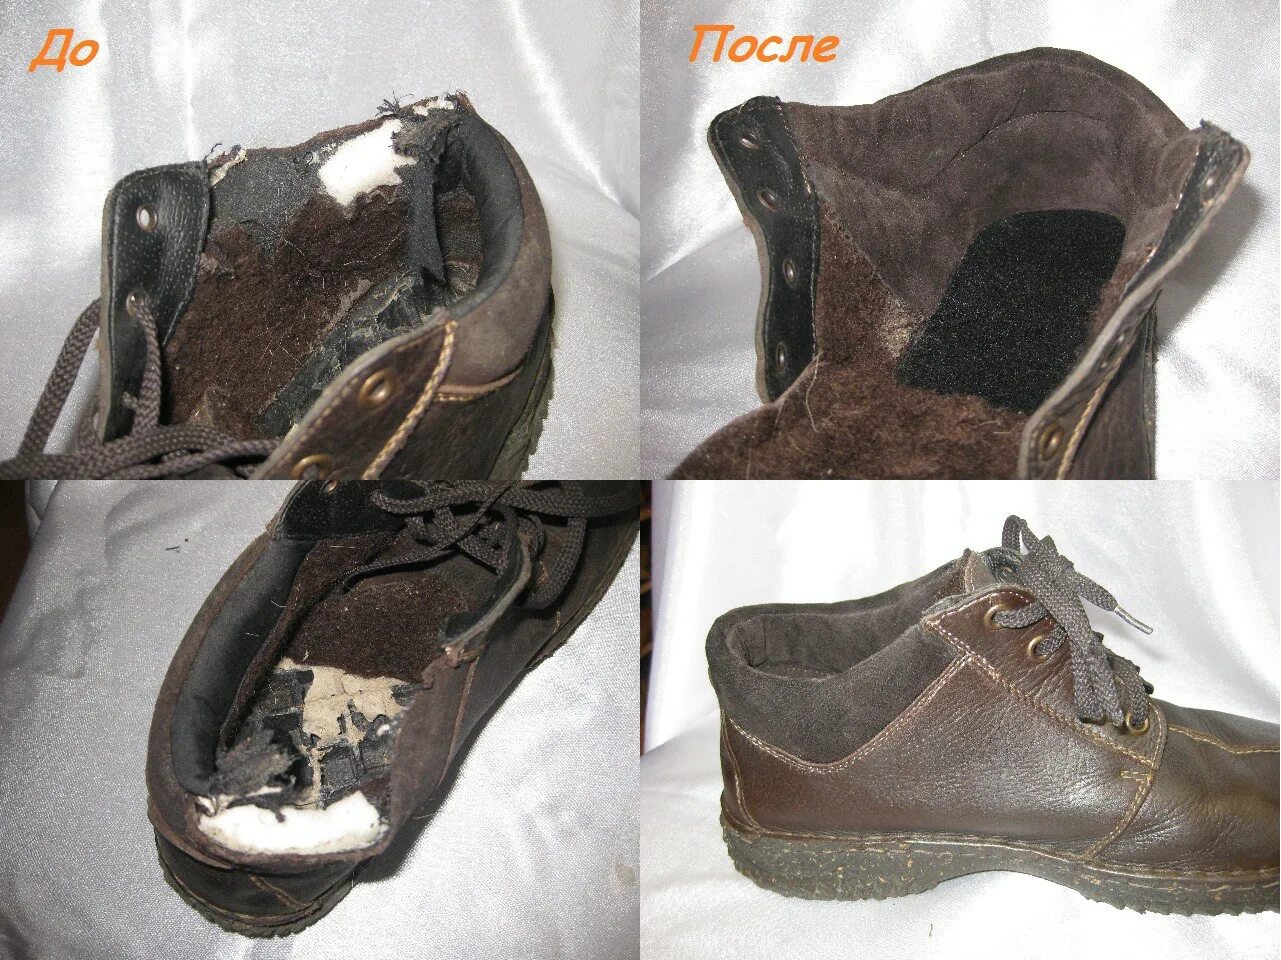 Восстановление задника на обуви. Обувь до после. Кожаный задник для обуви. Обувь внутри. Ремонт пяток обуви